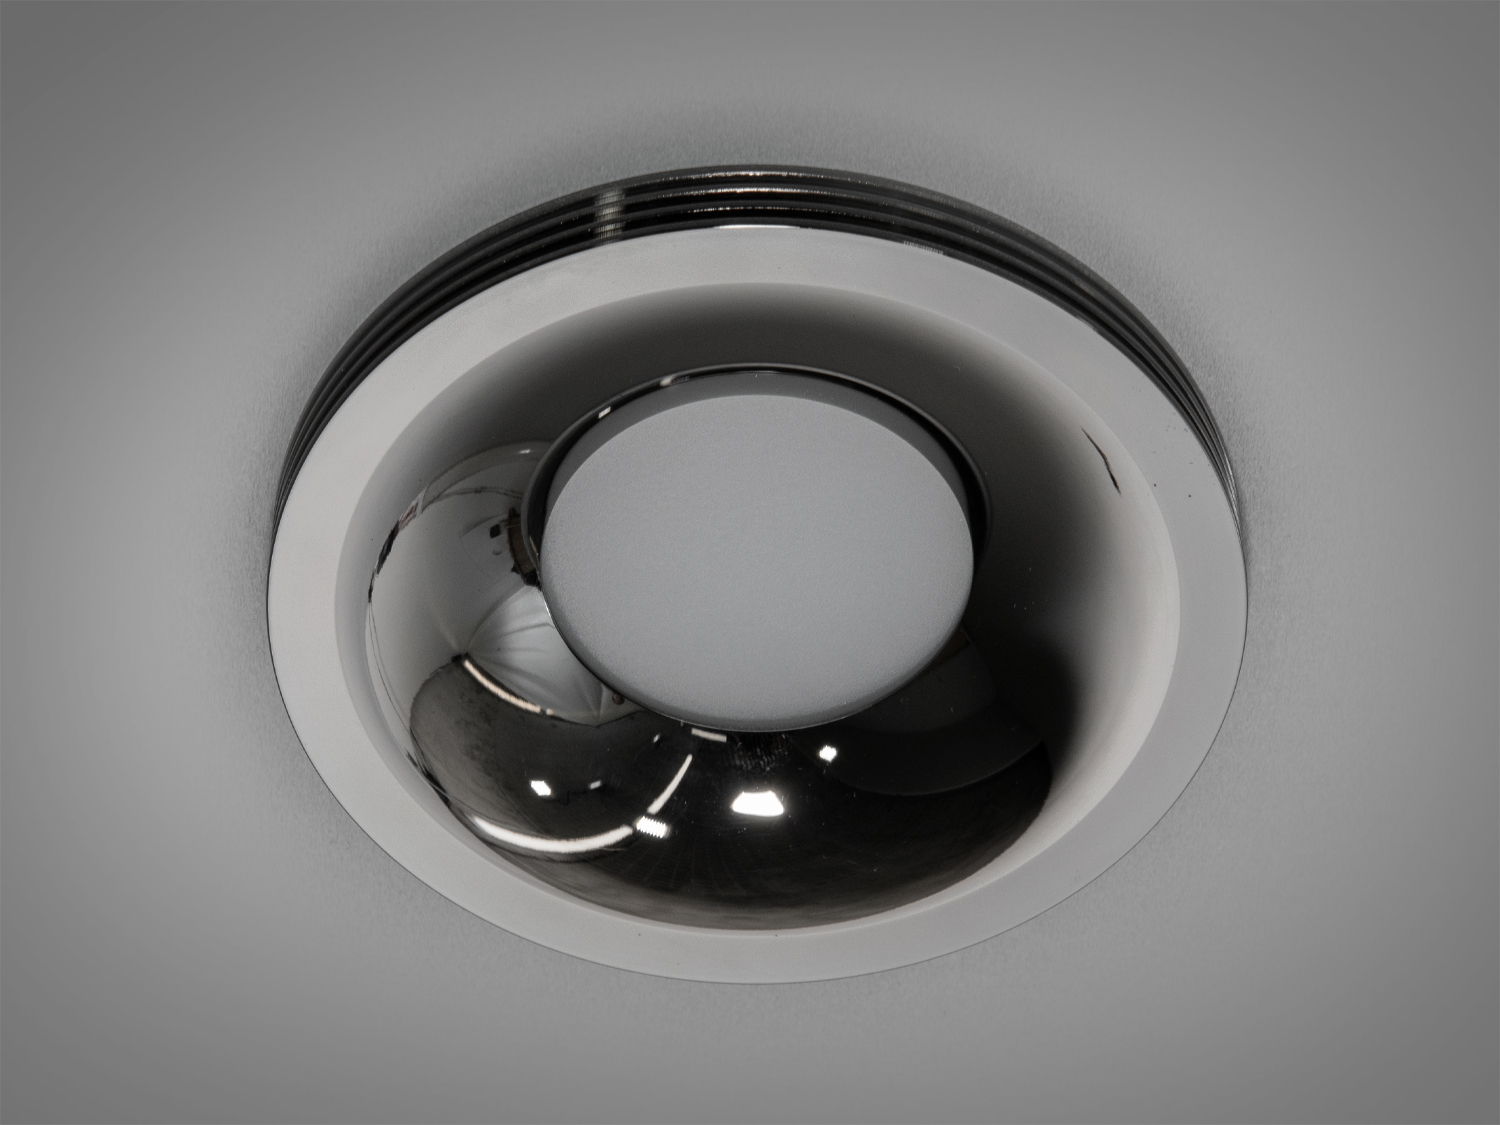 Алюмінієвий врізний точковий світильник на кухню, колір чорний хромТочечные светильники, Врезка, Точечные светильники MR-16, Новинки